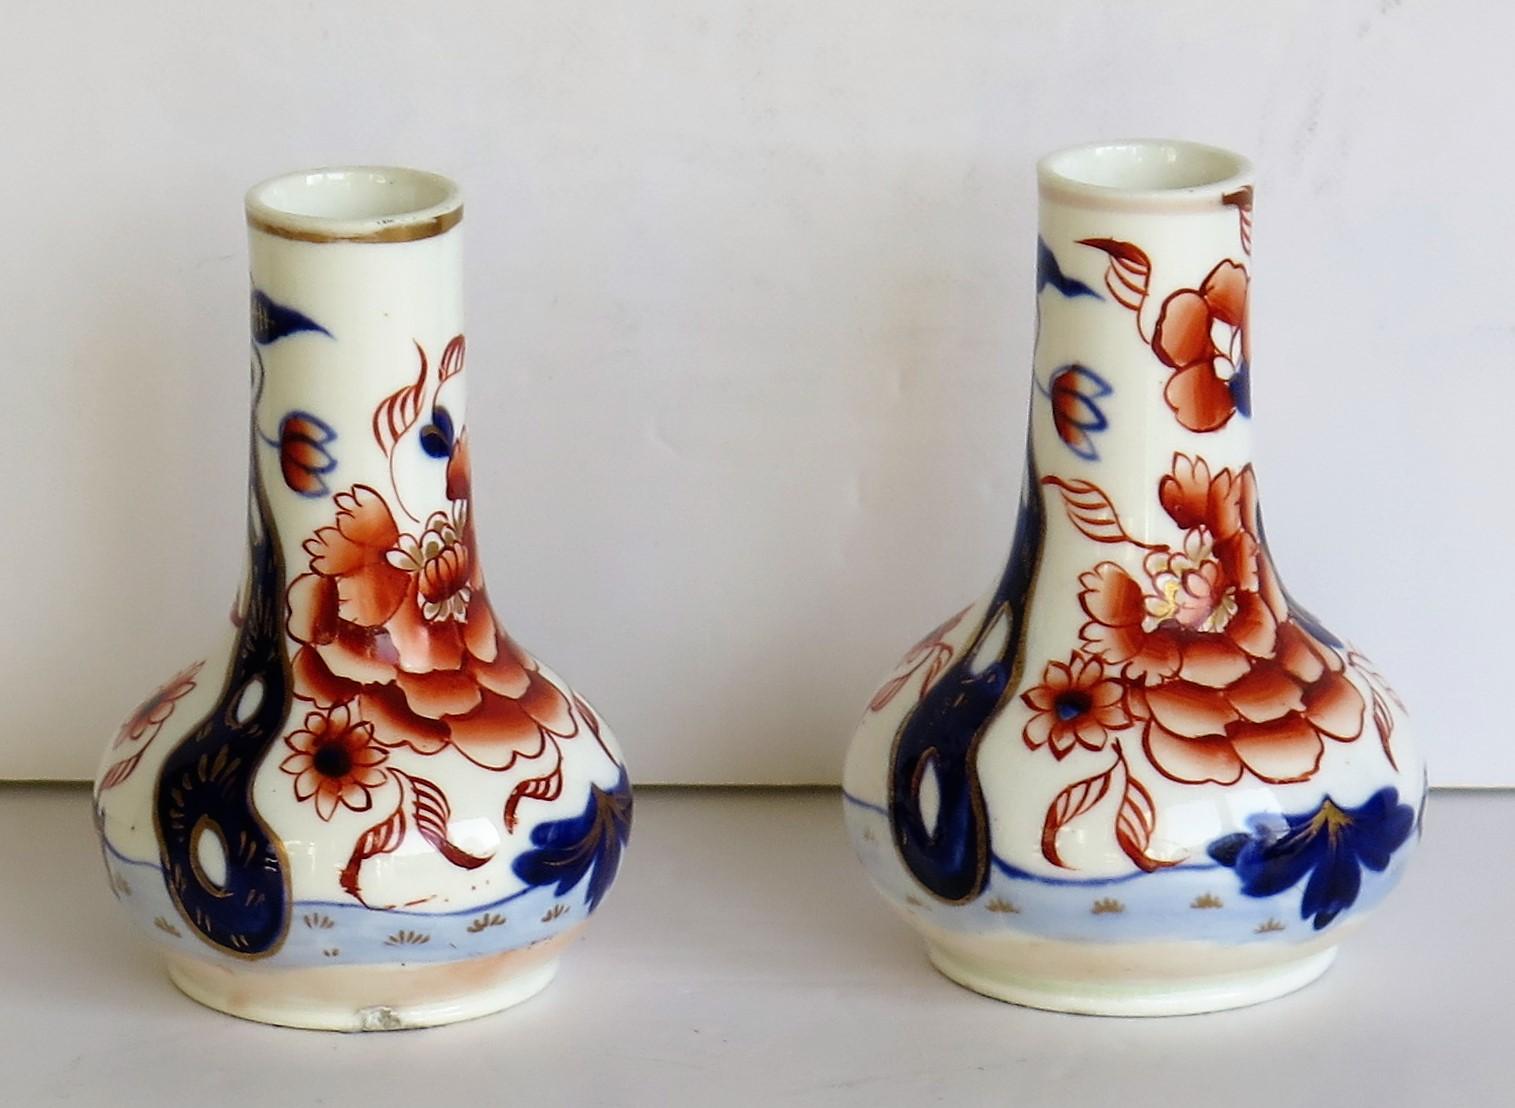 Il s'agit d'une belle paire de petits vases ou flacons à parfum en porcelaine fabriqués par Mason (C J Mason) de Lane Delph, dans les poteries du Staffordshire, en Angleterre.

Ils sont décorés à la main selon le motif Fence Japan, qui est un